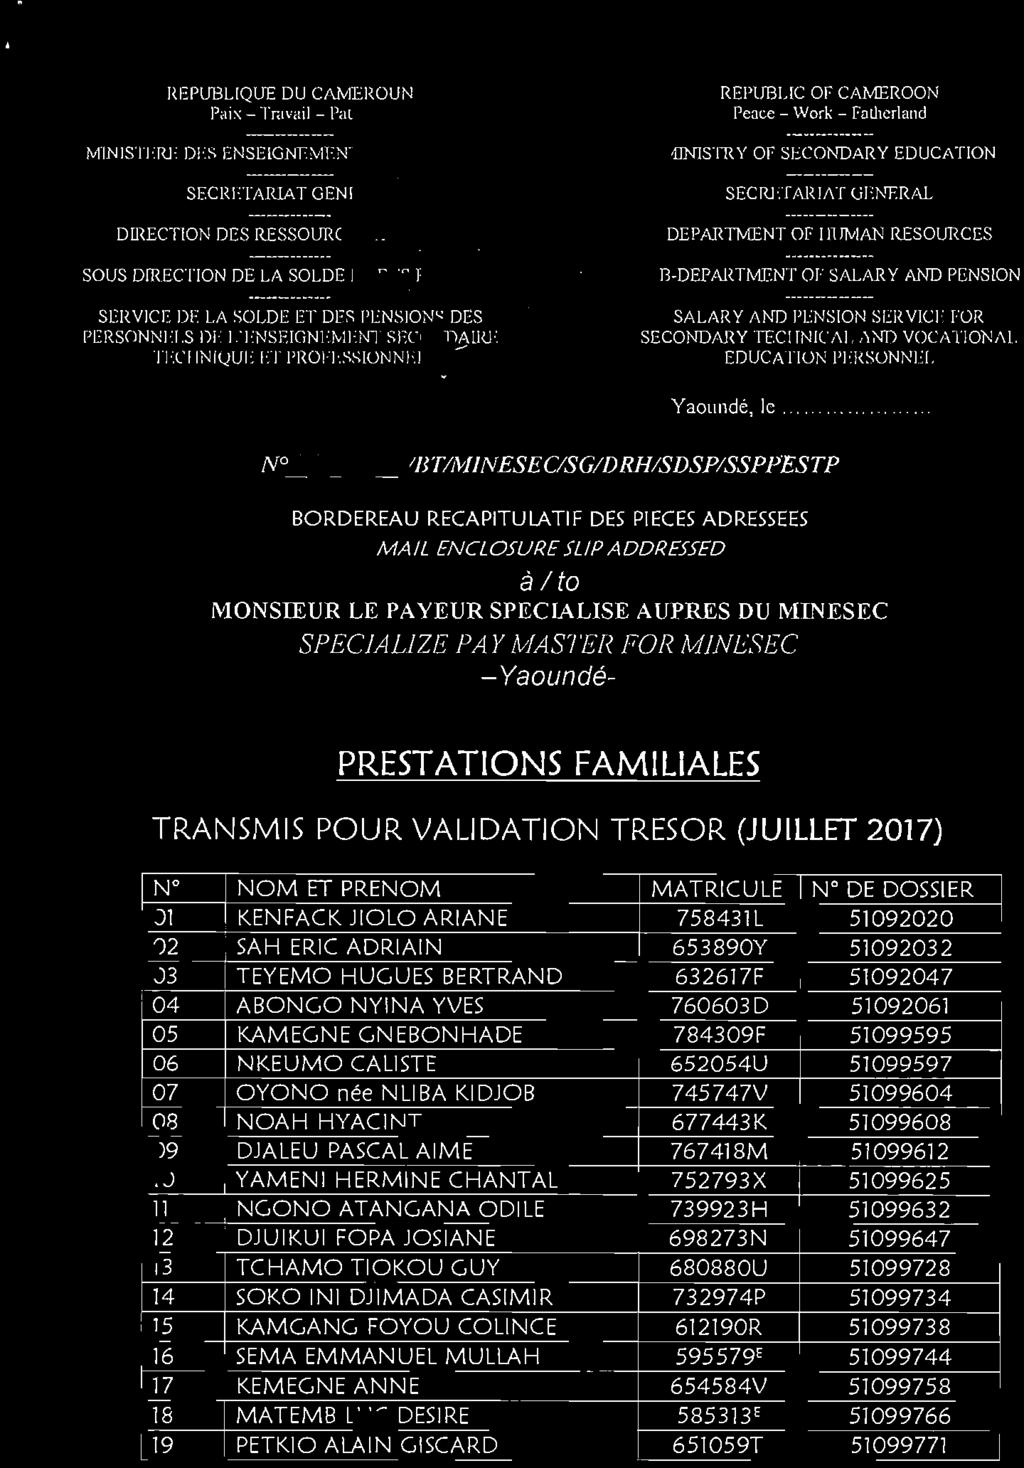 MINESEC -Yaoundé- PRESTATIONS FAMILIALES TRANSMIS POUR VALIDATION TRESOR (JUILLET 207) N NOM ET PRENOM MATRICULE N DE DOSSIER 0 KEN FAC K JIOLO ARIANE 75843 L 5092020 02 SAH ERIC ADRI AIN 653890Y